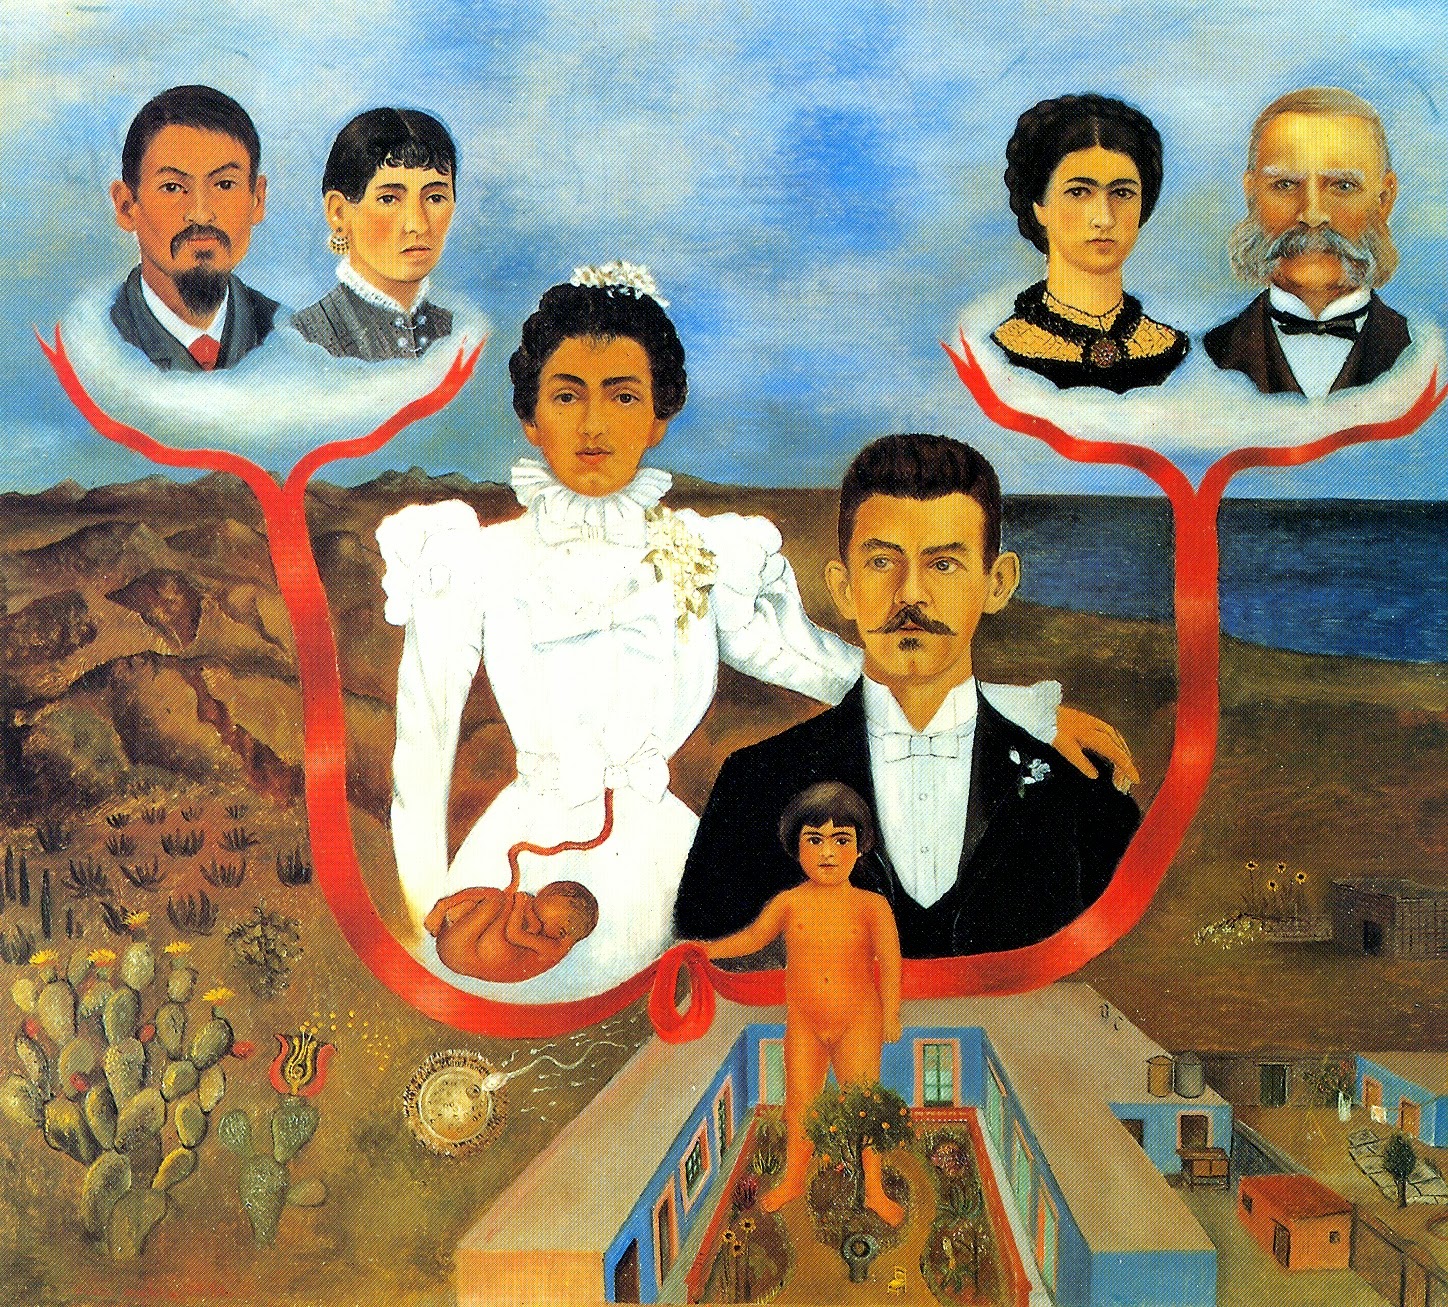 "Mis abuelos, mis padres y yo", Frida Kahlo